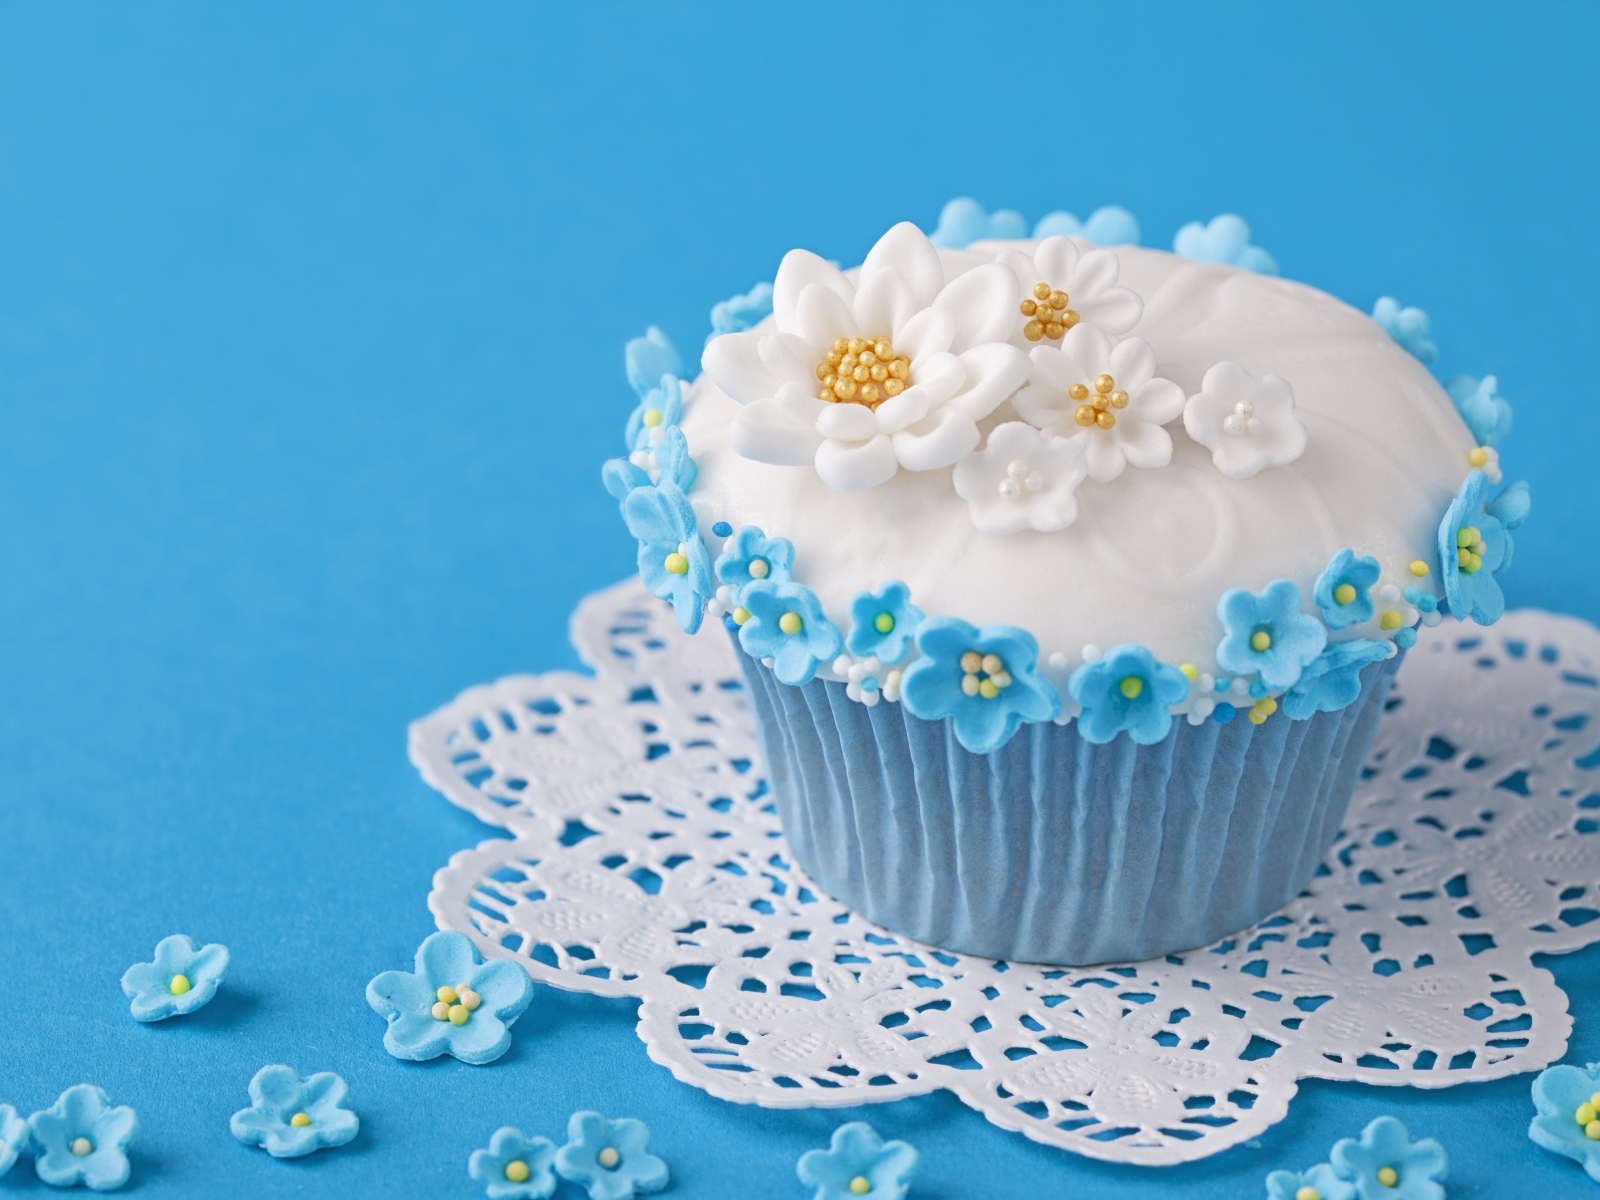 Аппетитный кекс украшен цветами на голубом фоне